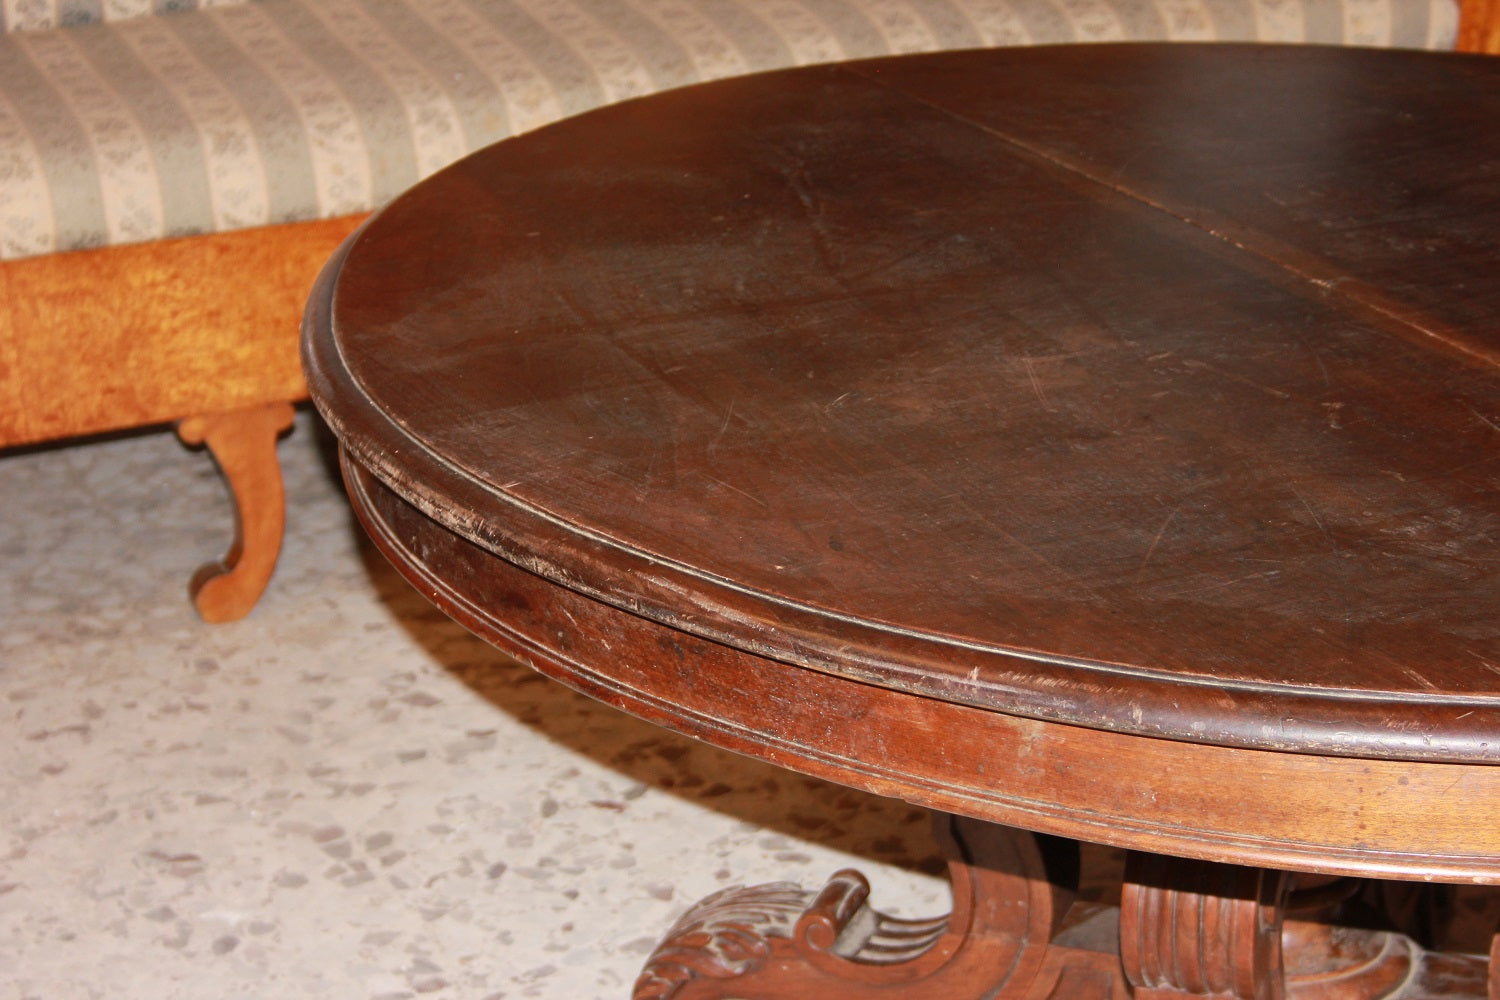 Tavolo Ovale Allungabile Stile Luigi Filippo in Legno di Noce del 1800